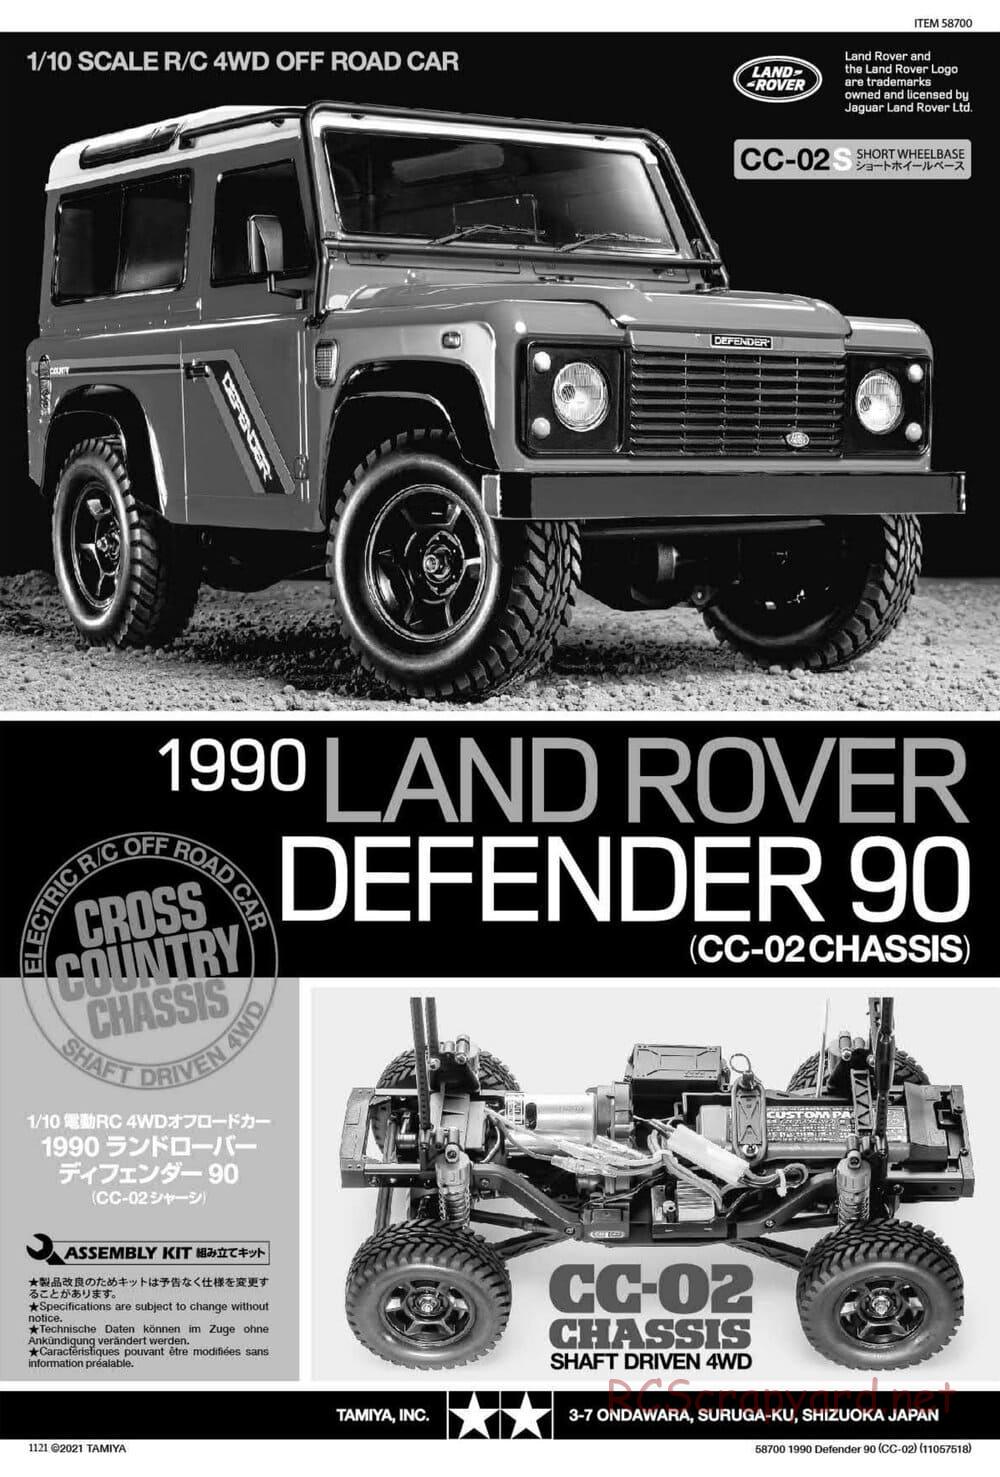 Tamiya - 1990 Land Rover Defender 90 - CC-02 Chassis - Manual - Page 1